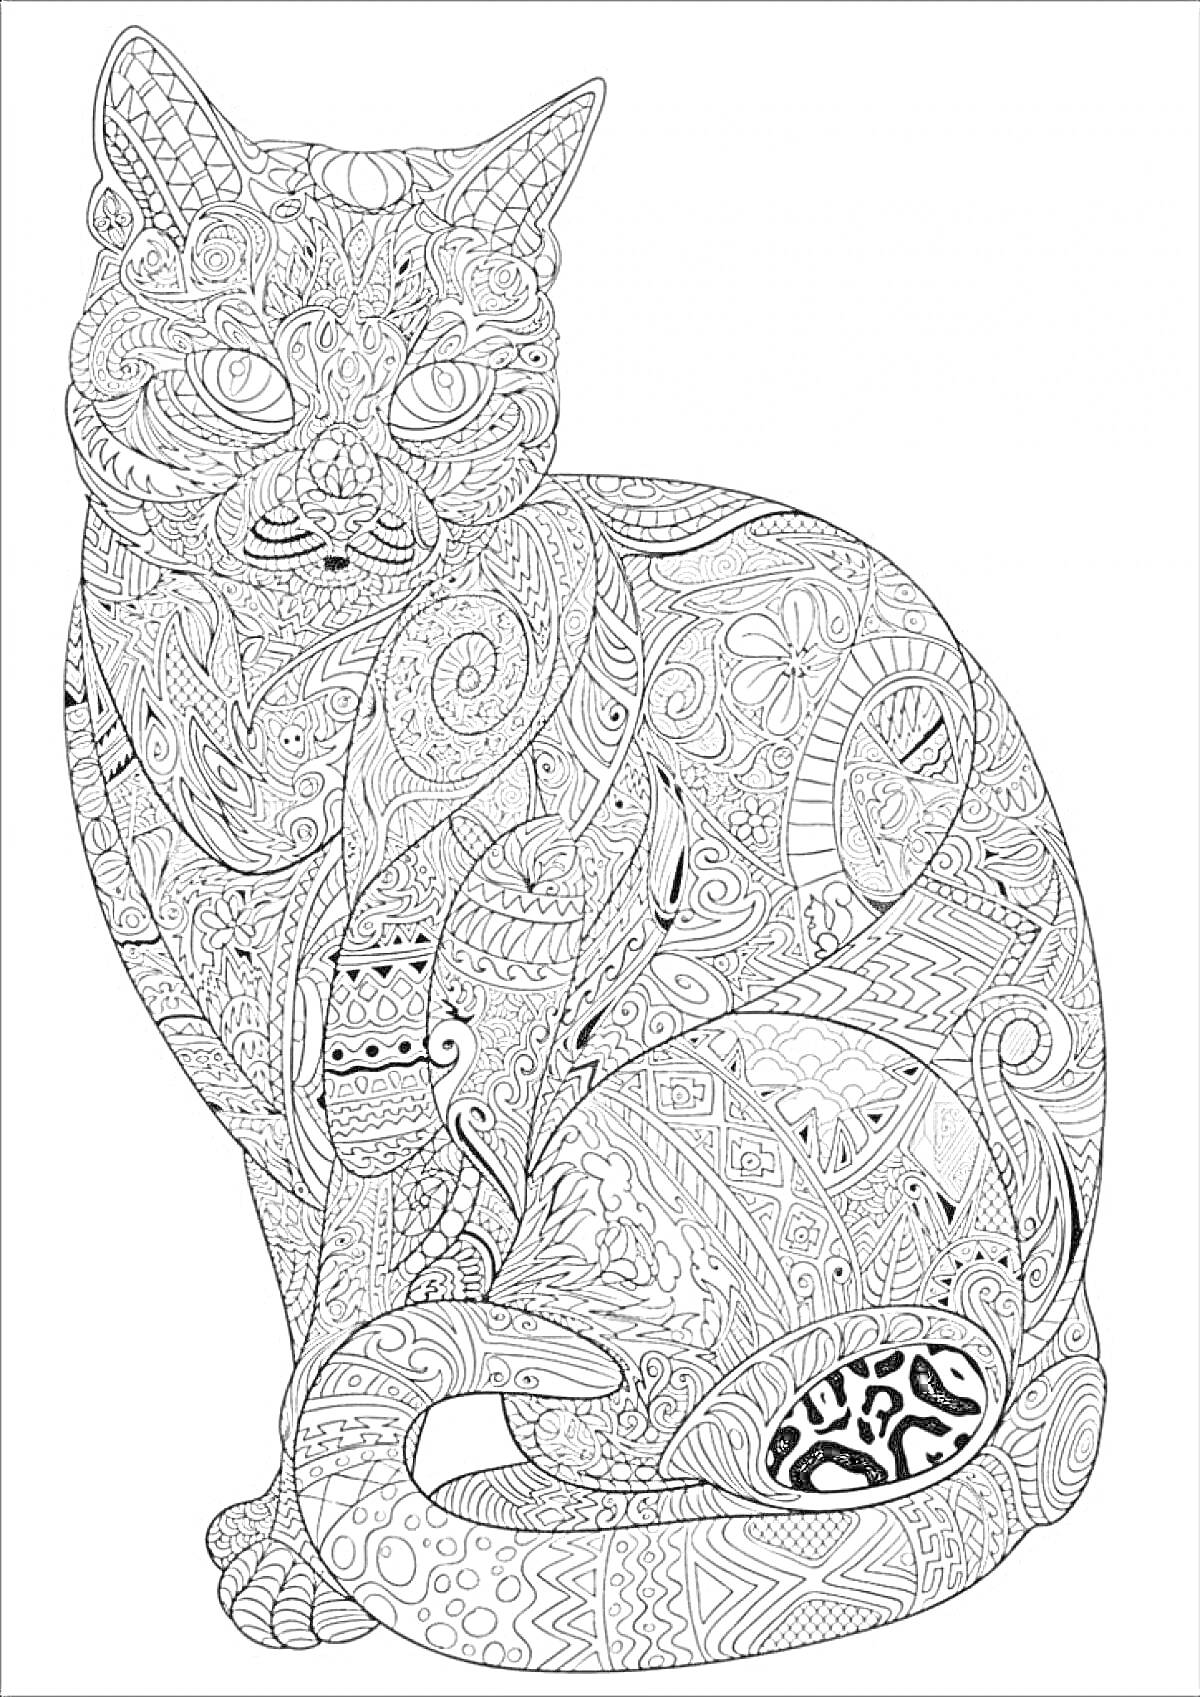 Раскраска Антистресс раскраска с изображением стилизованной кошки, украшенной сложными узорами, включая цветочные мотивы, геометрические фигуры, абстрактные элементы, завитки и линии.